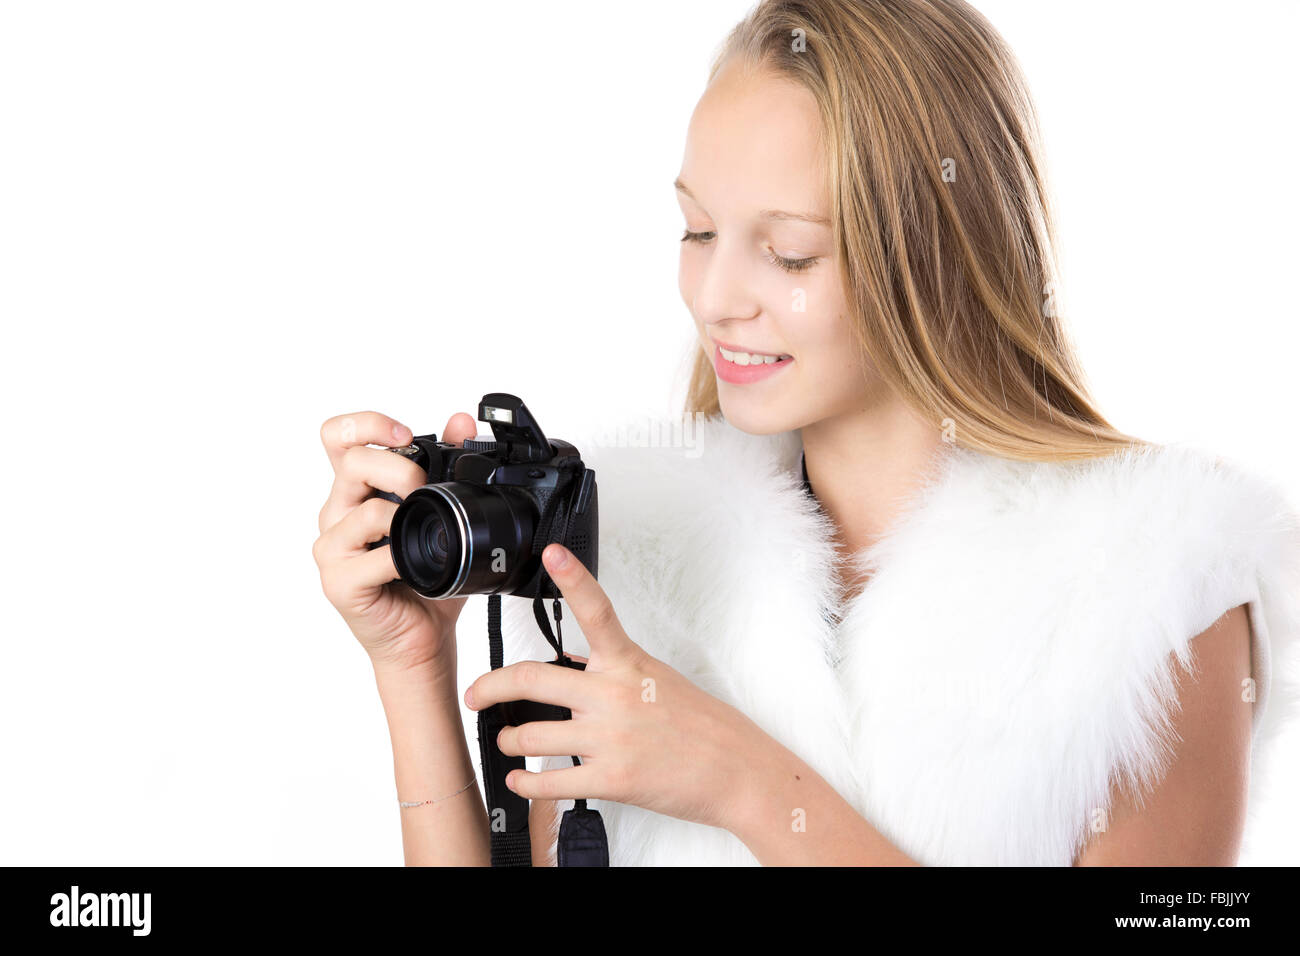 Porträt von glücklich niedlich schönen kaukasischen blonden Mädchen in weißen pelzigen Outfit, Blick in die digitale Kamera mit einem Lächeln Stockfoto